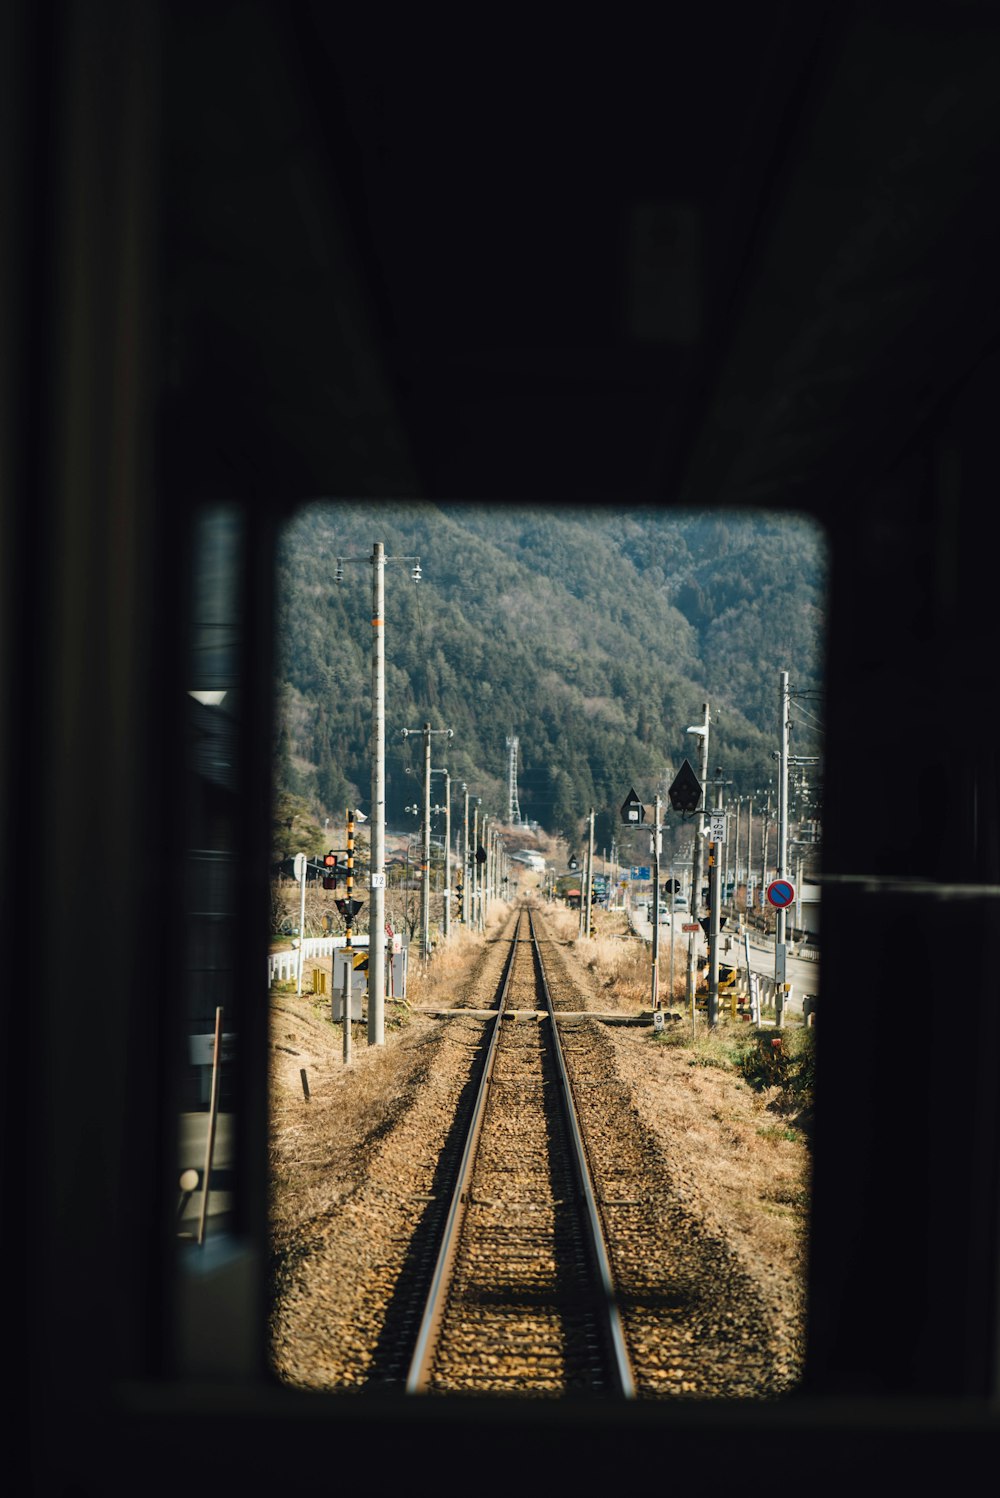 Photographie à mise au point peu profonde d’un rail de train près de poteaux électriques pendant la journée